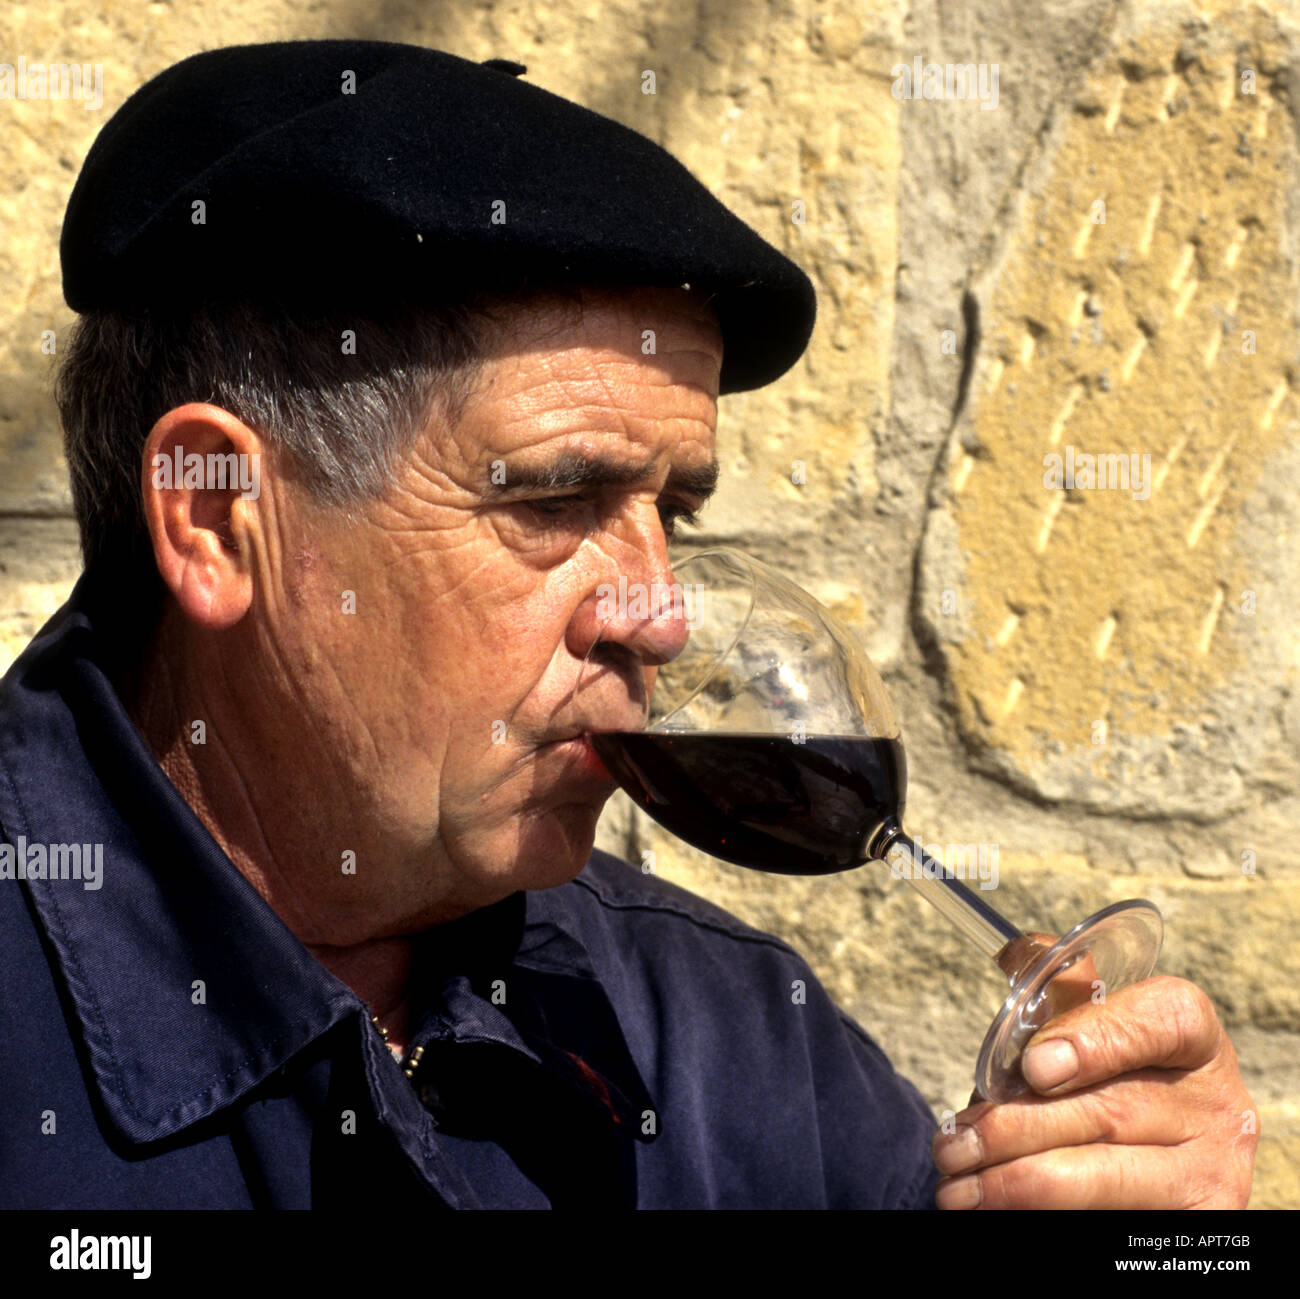 Rioja Mann Geschmack Test Probe Glas Wein Verkostung roten Baskenmütze haben nehmen Trinker Toper Säufer Stockfoto